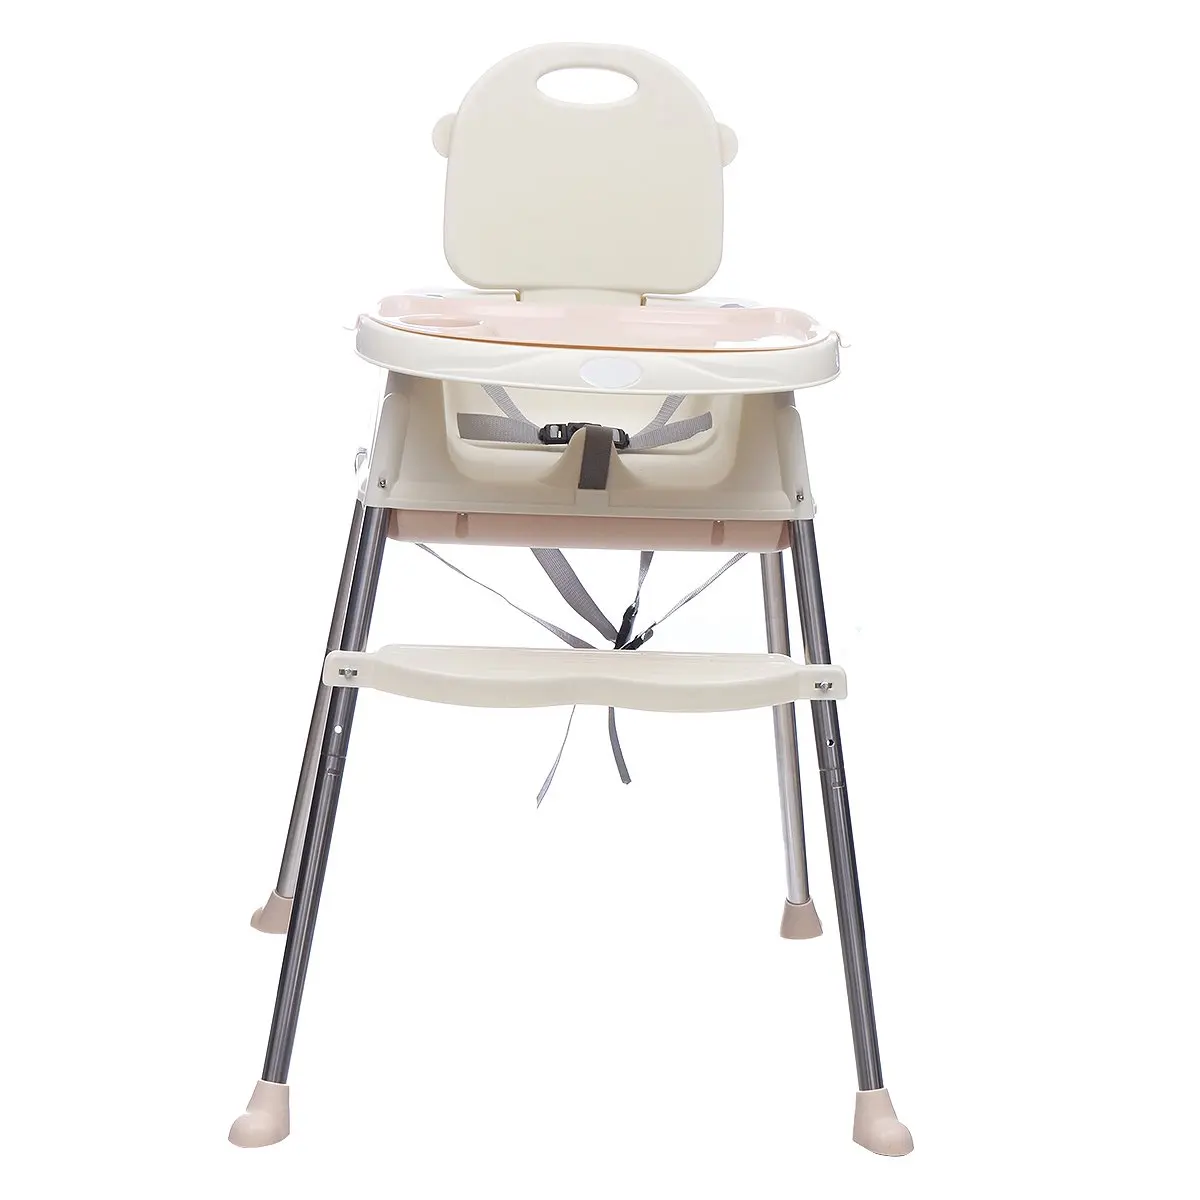 ПП ВПО Высокий детский стул для кормления стул детский стул Booster Сиденье Детские регулируемые складные стулья детские стульчики для кормления детские сидения для еды